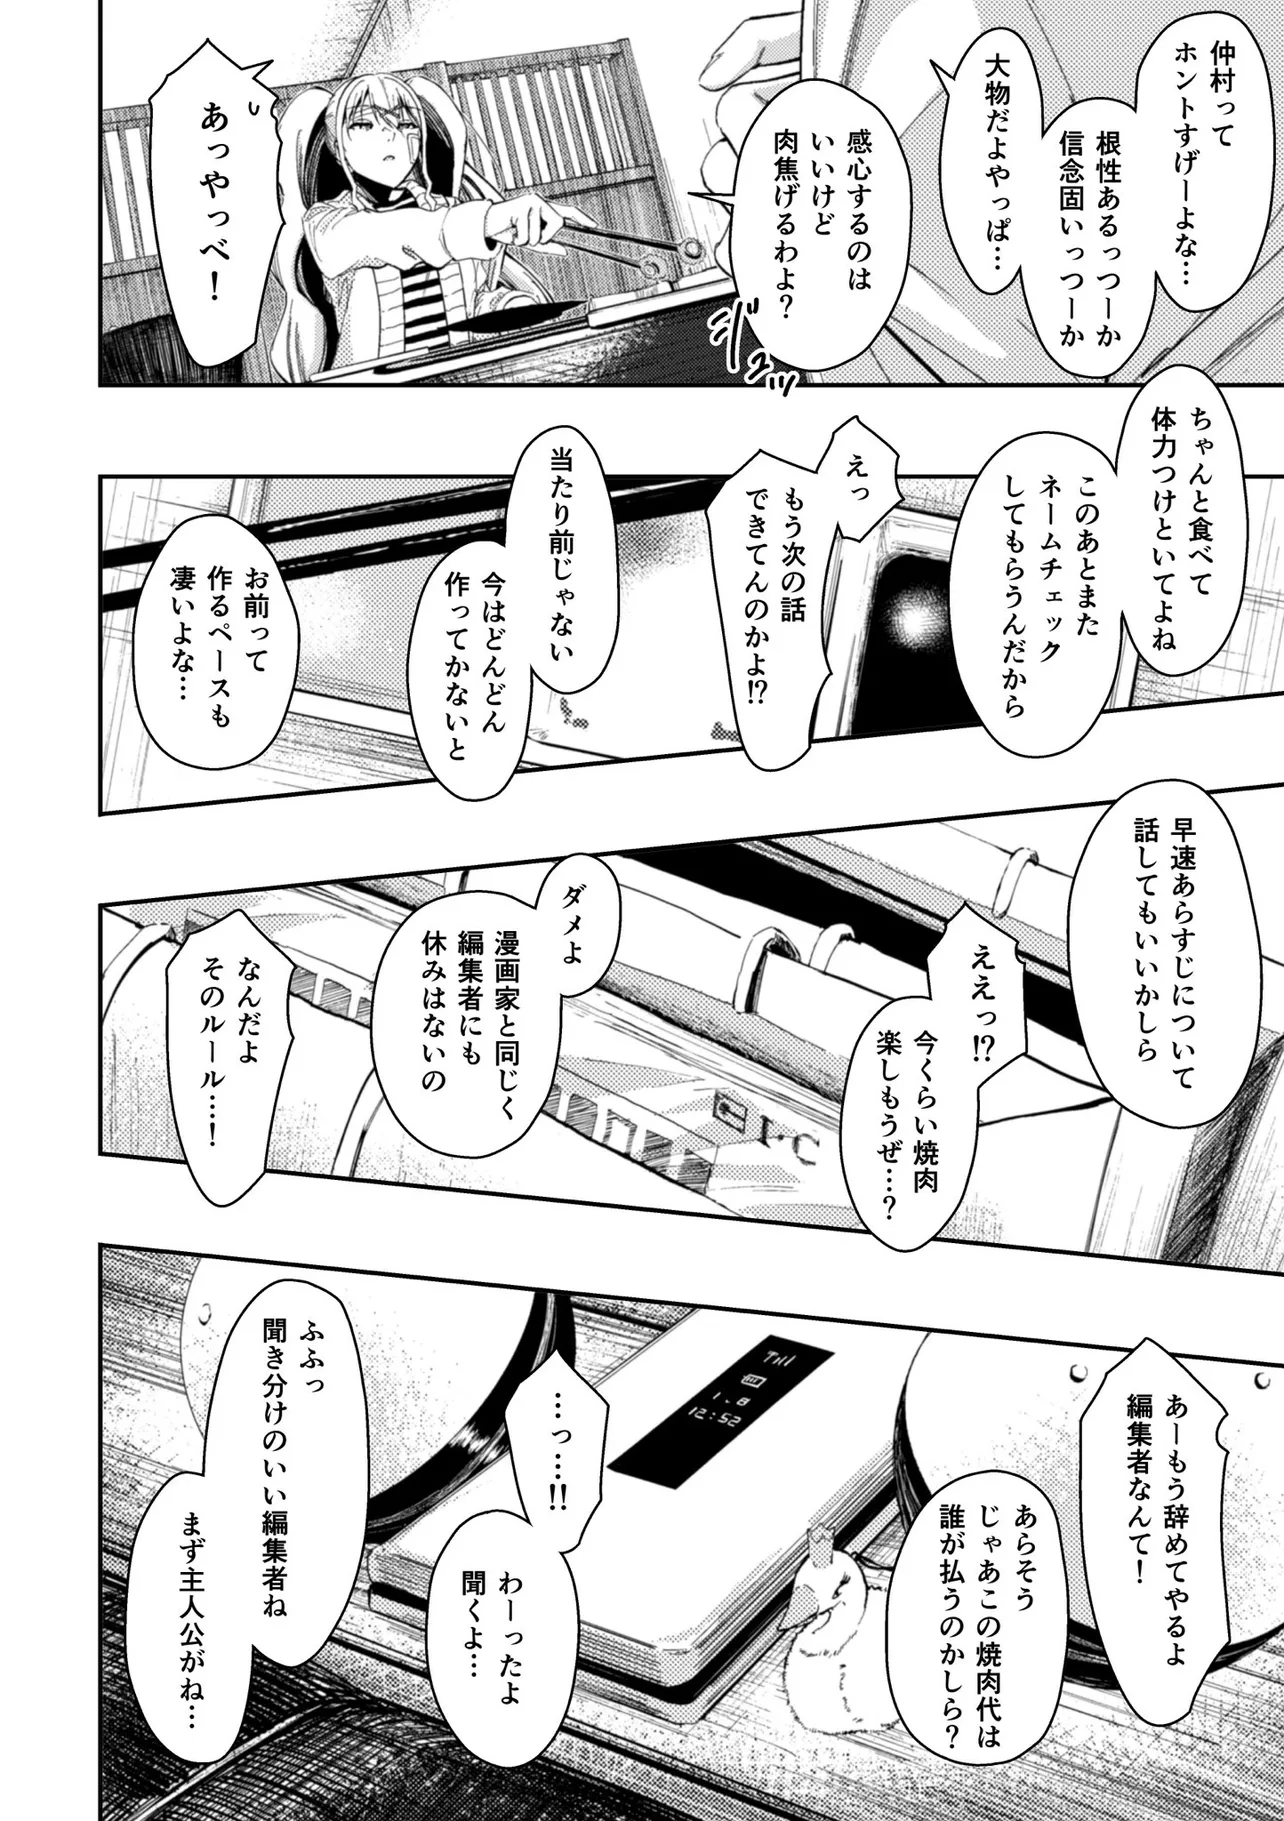 『いじめられっ子のハーフと漫画家を目指す話』(69/71)